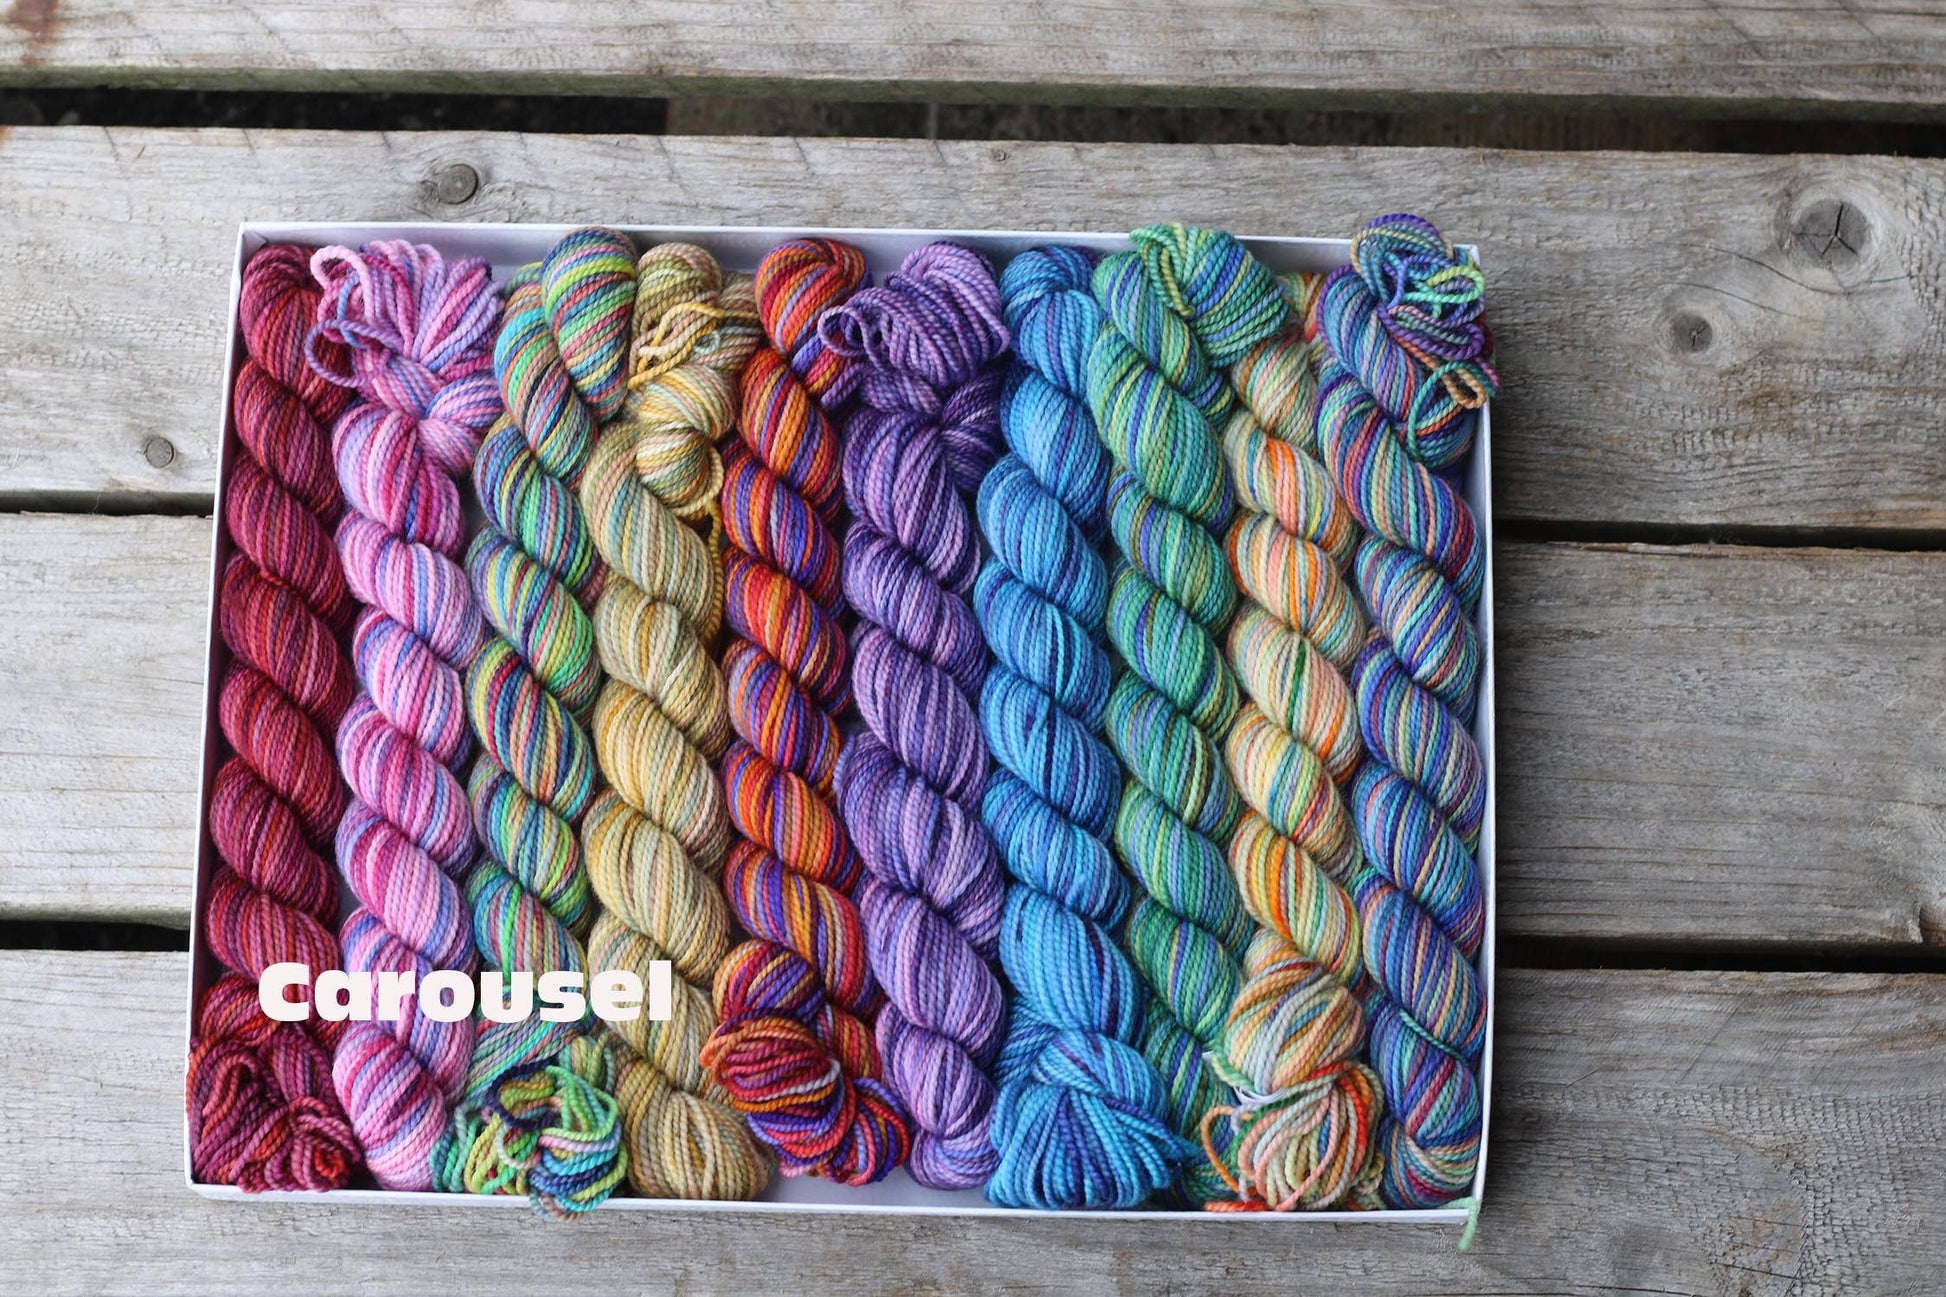 Koigu Wool Designs Carousel Koigu Pencil Box Yarn